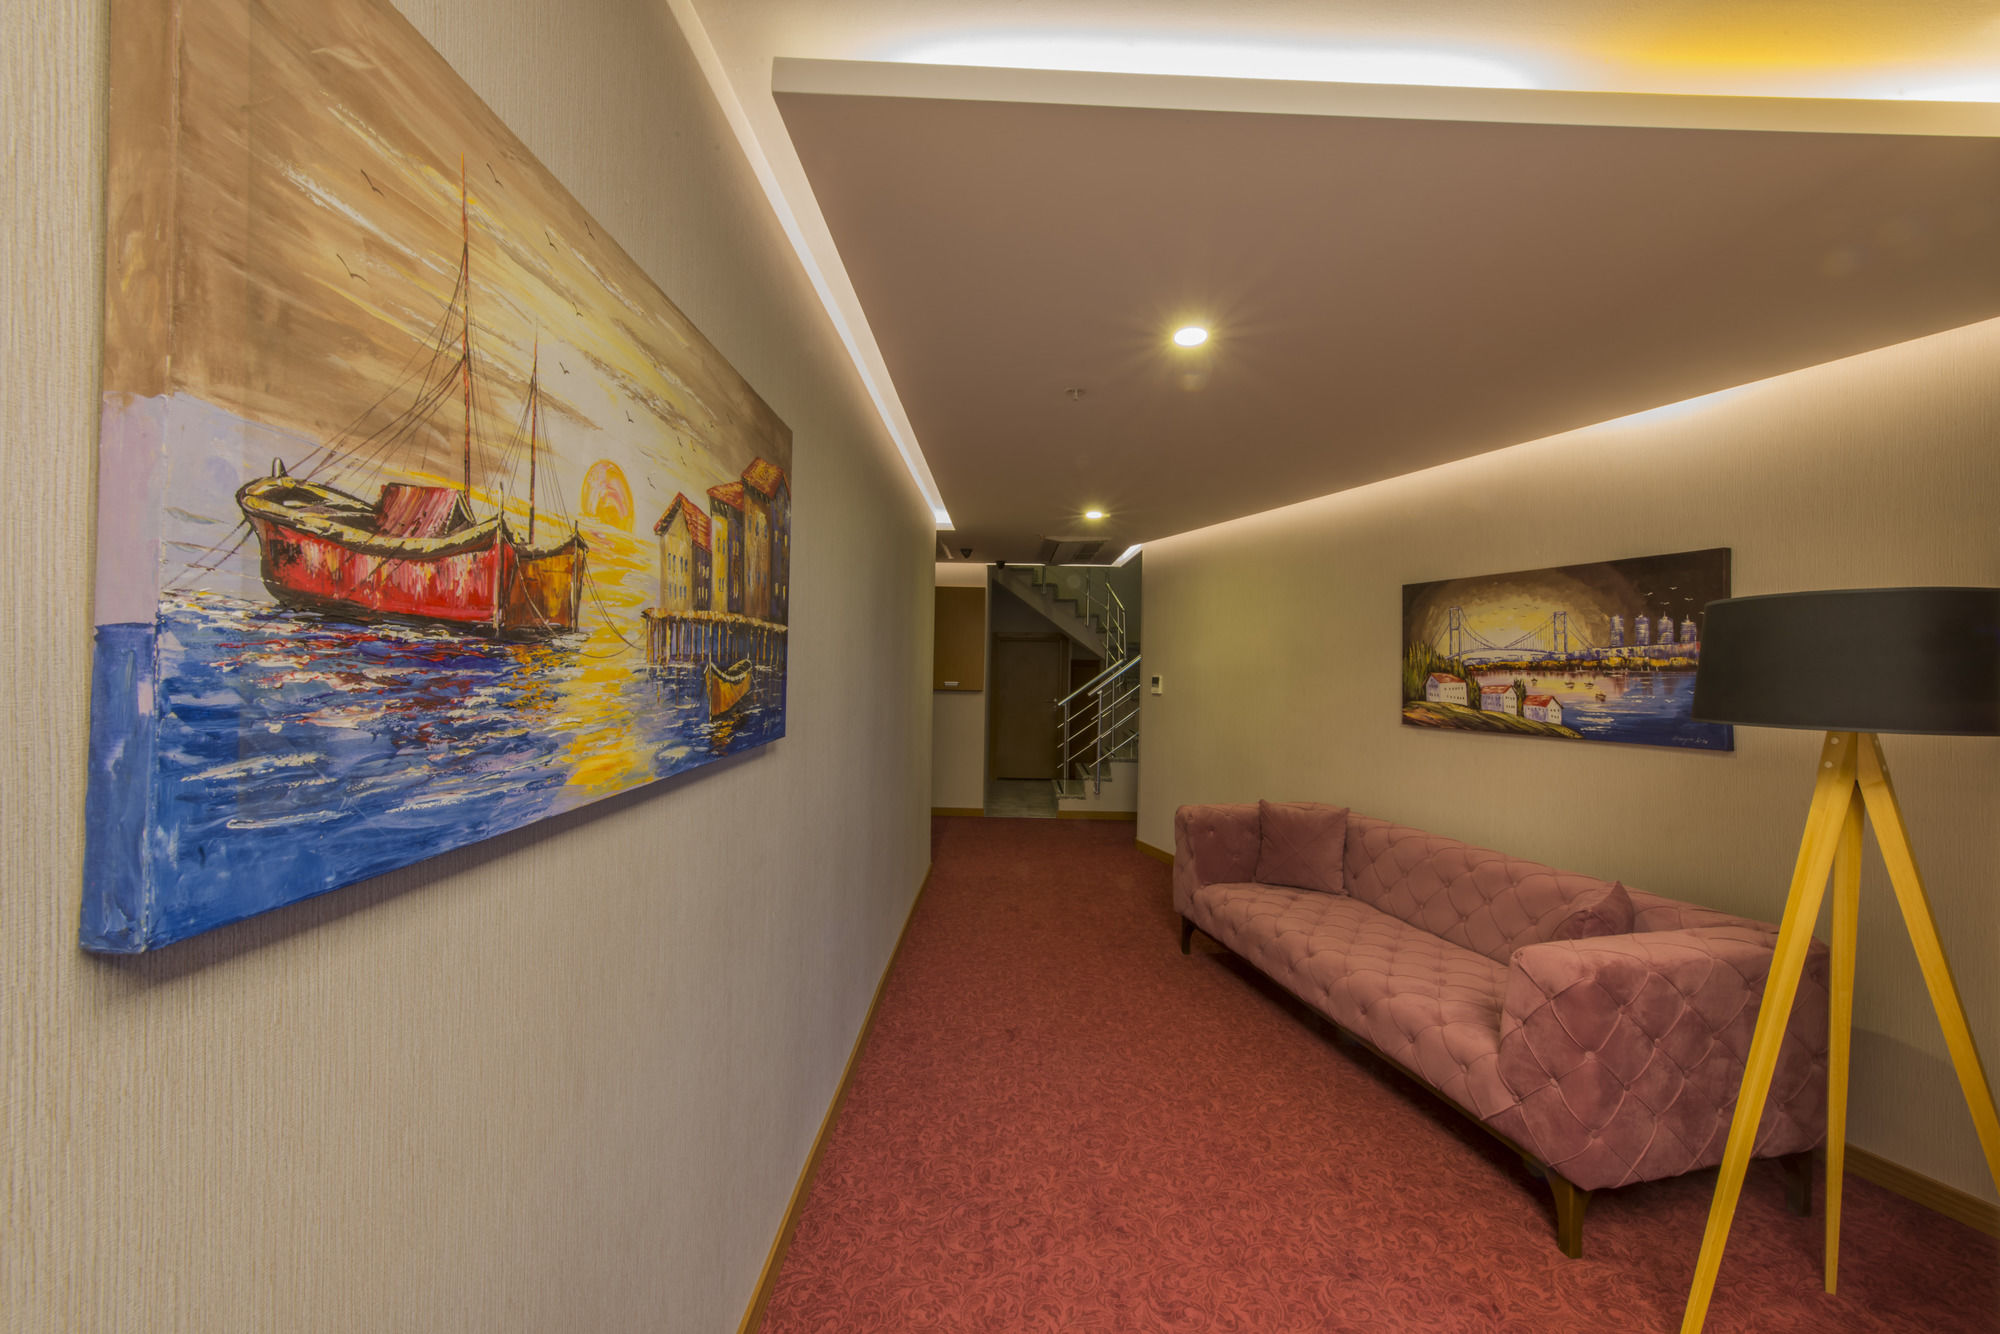 Yildiz Life Hotel